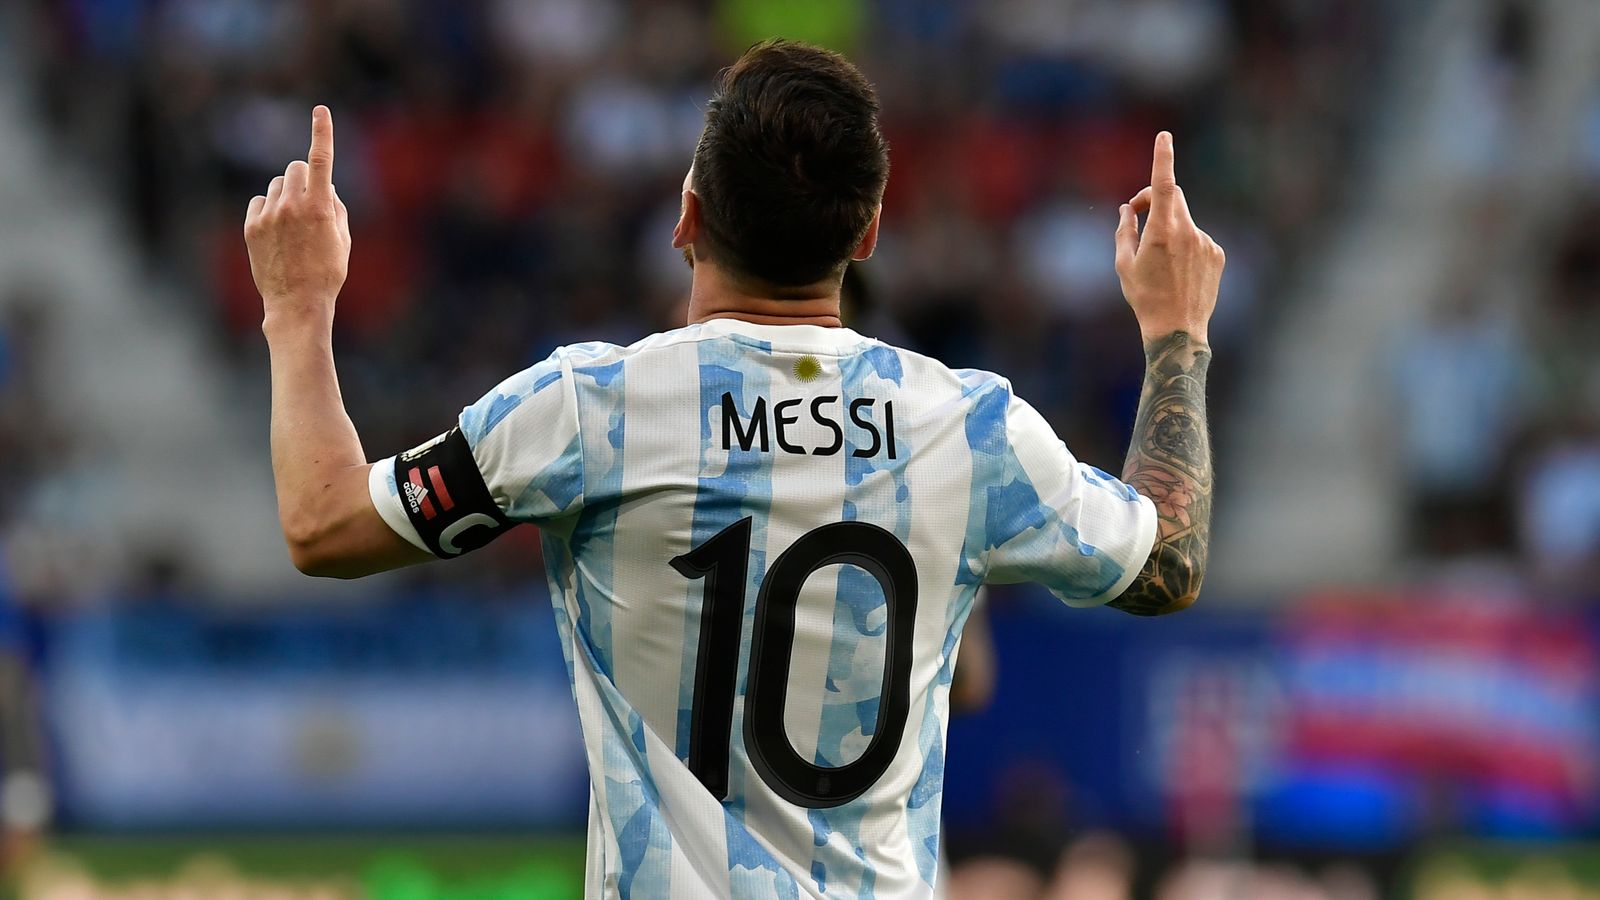 L’Espagne sauve la République tchèque en fin de tirage au sort de la Ligue des Nations, Lionel Messi marque cinq buts pour l’Argentine bat l’Estonie |  nouvelles du football